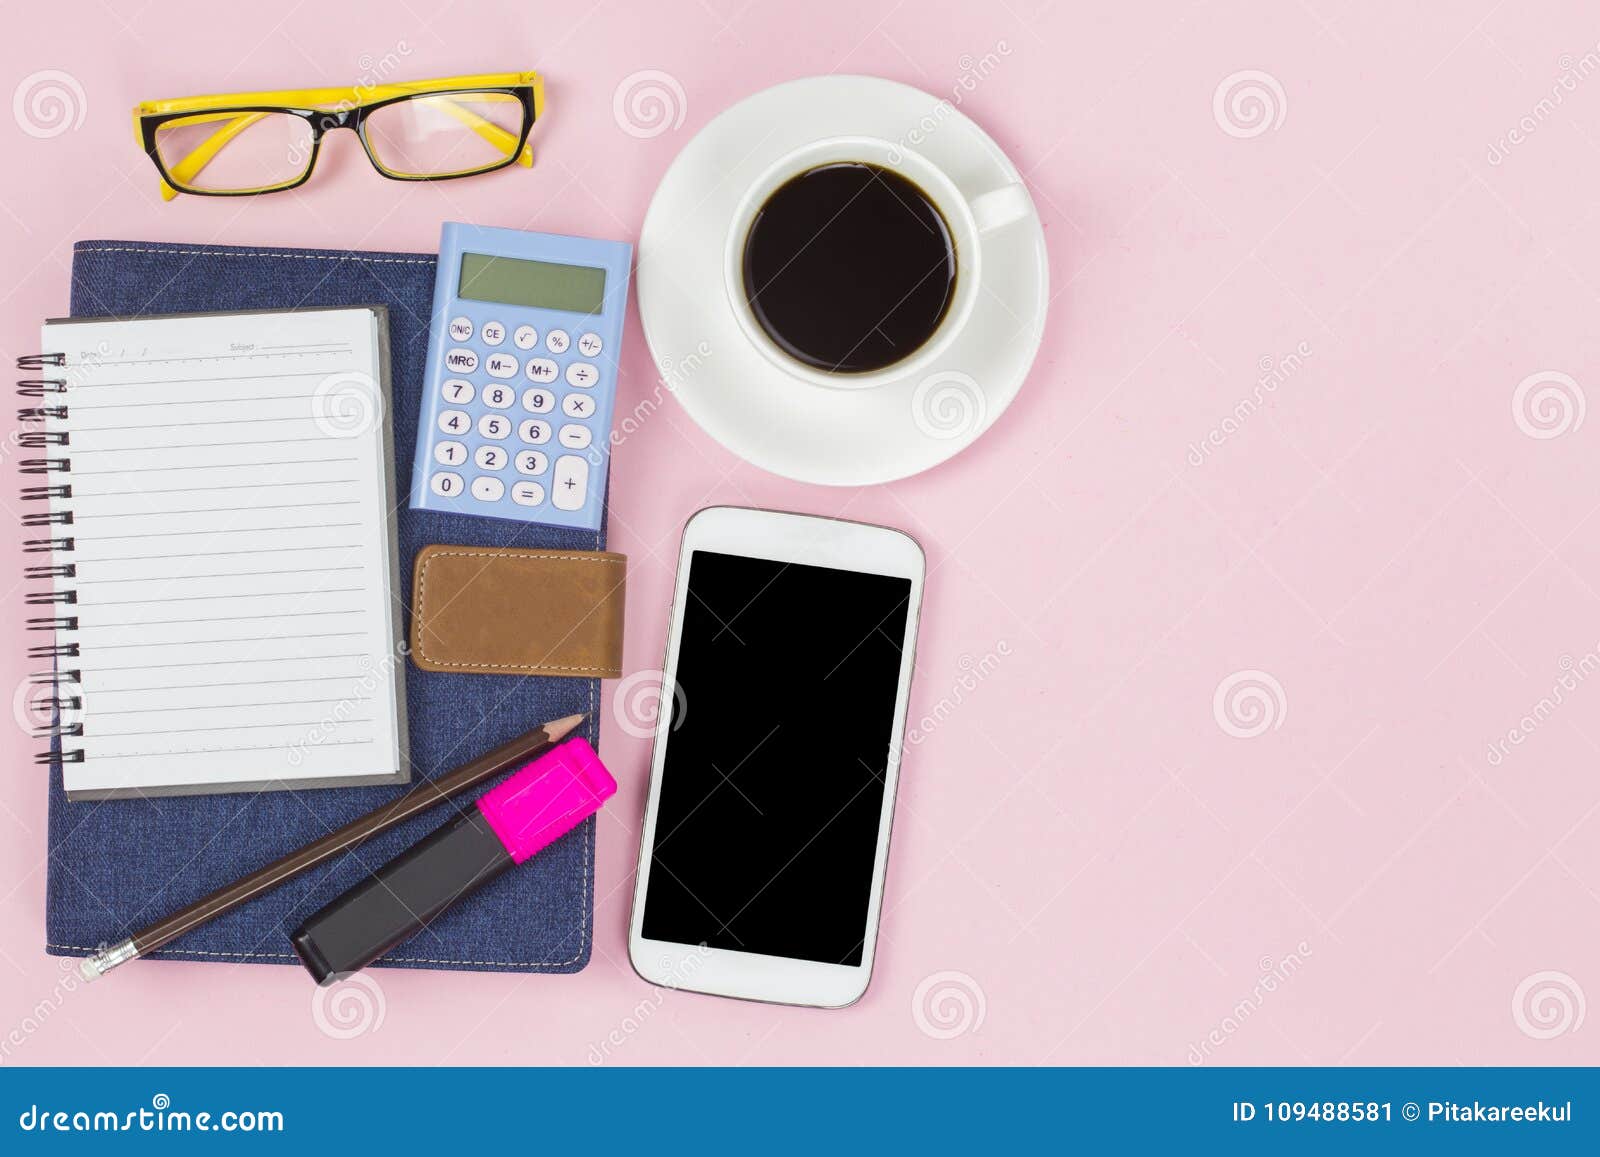 A sarja de Nimes azul da tampa do caderno com a calculadora móvel da etiqueta vazia e o copo branco do café preto amarelam vidros no estilo pastel do fundo cor-de-rosa com o copyspace flatlay